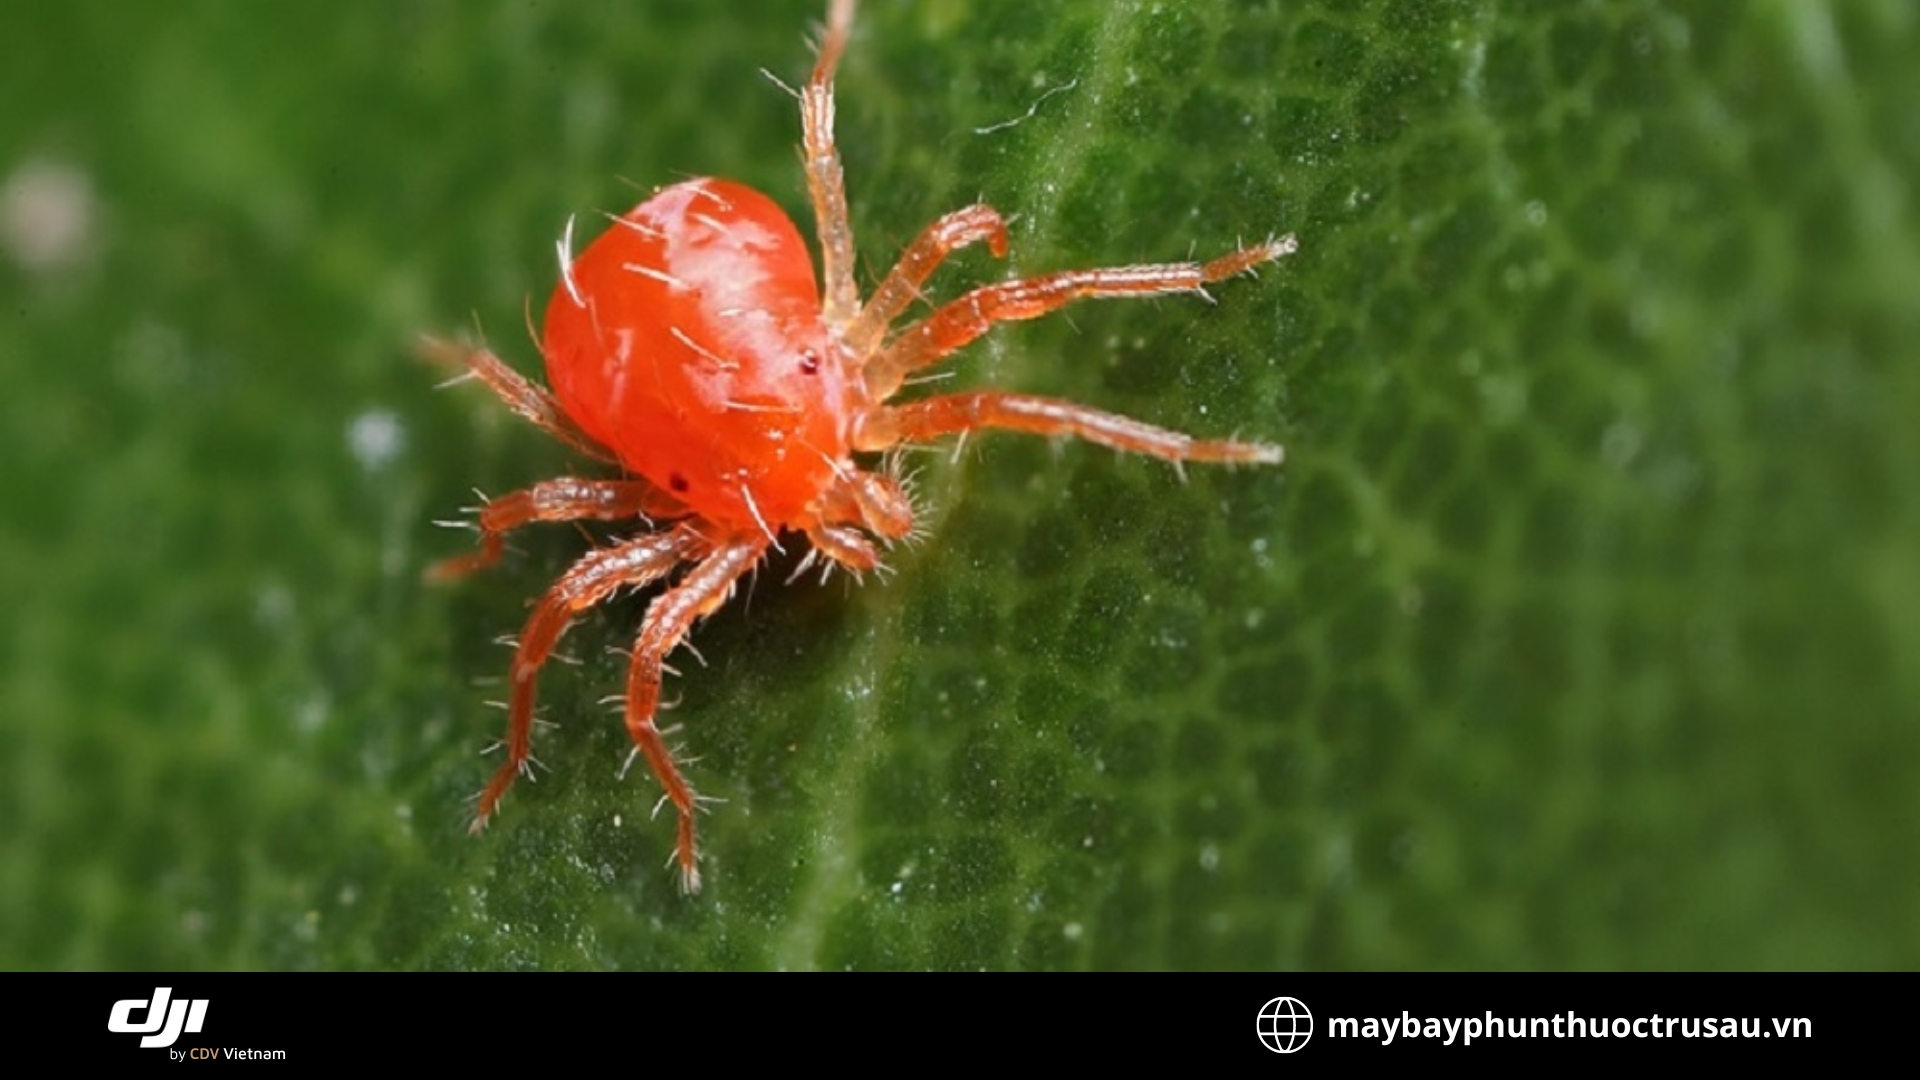 Nhện đỏ (Red Spider Mites)